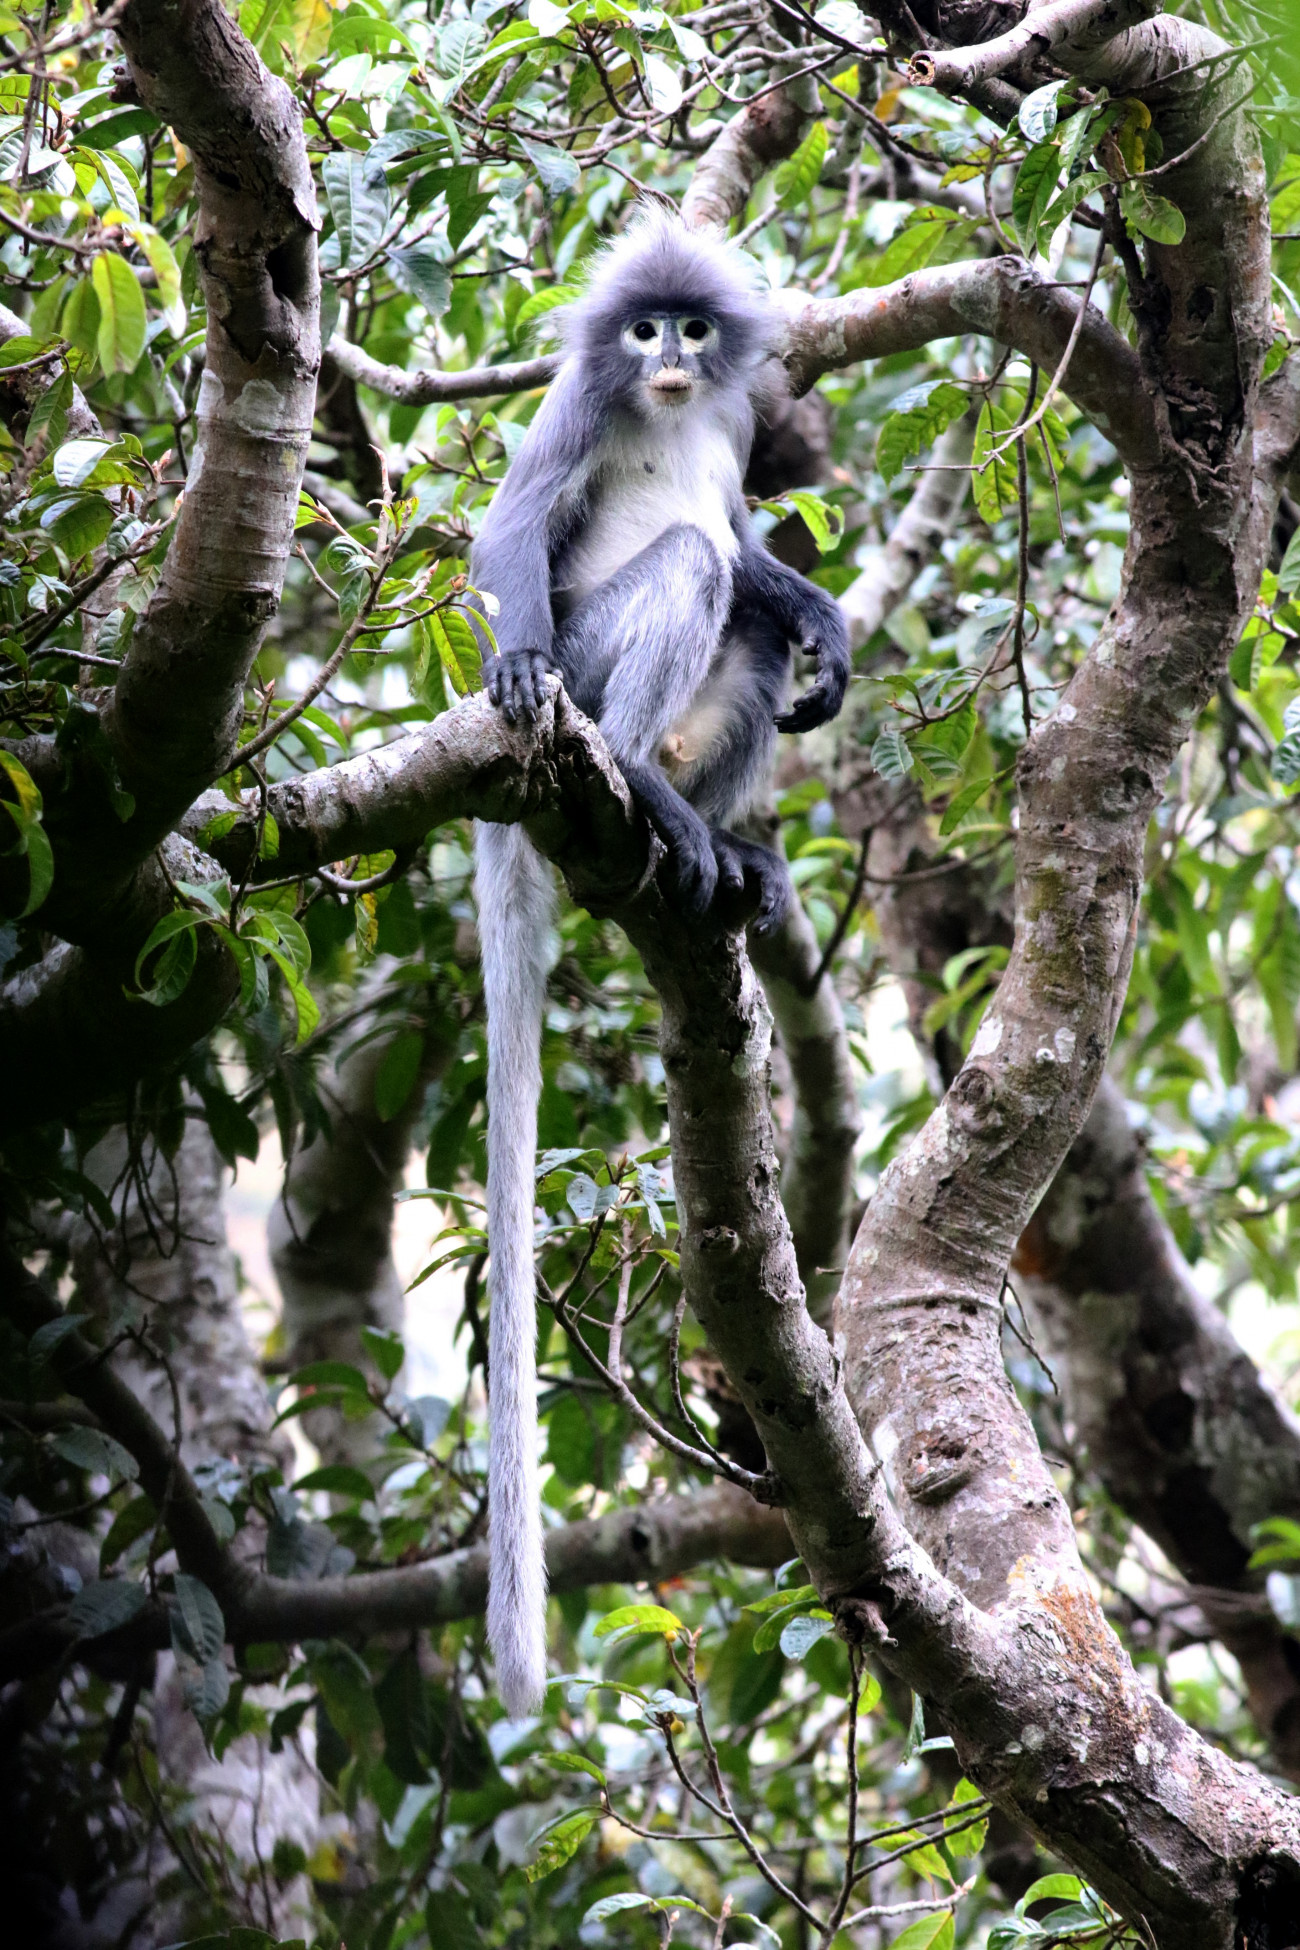 Egy popa lingur, a kritikusan veszélyeztetett új majomfaj egyik képviselője